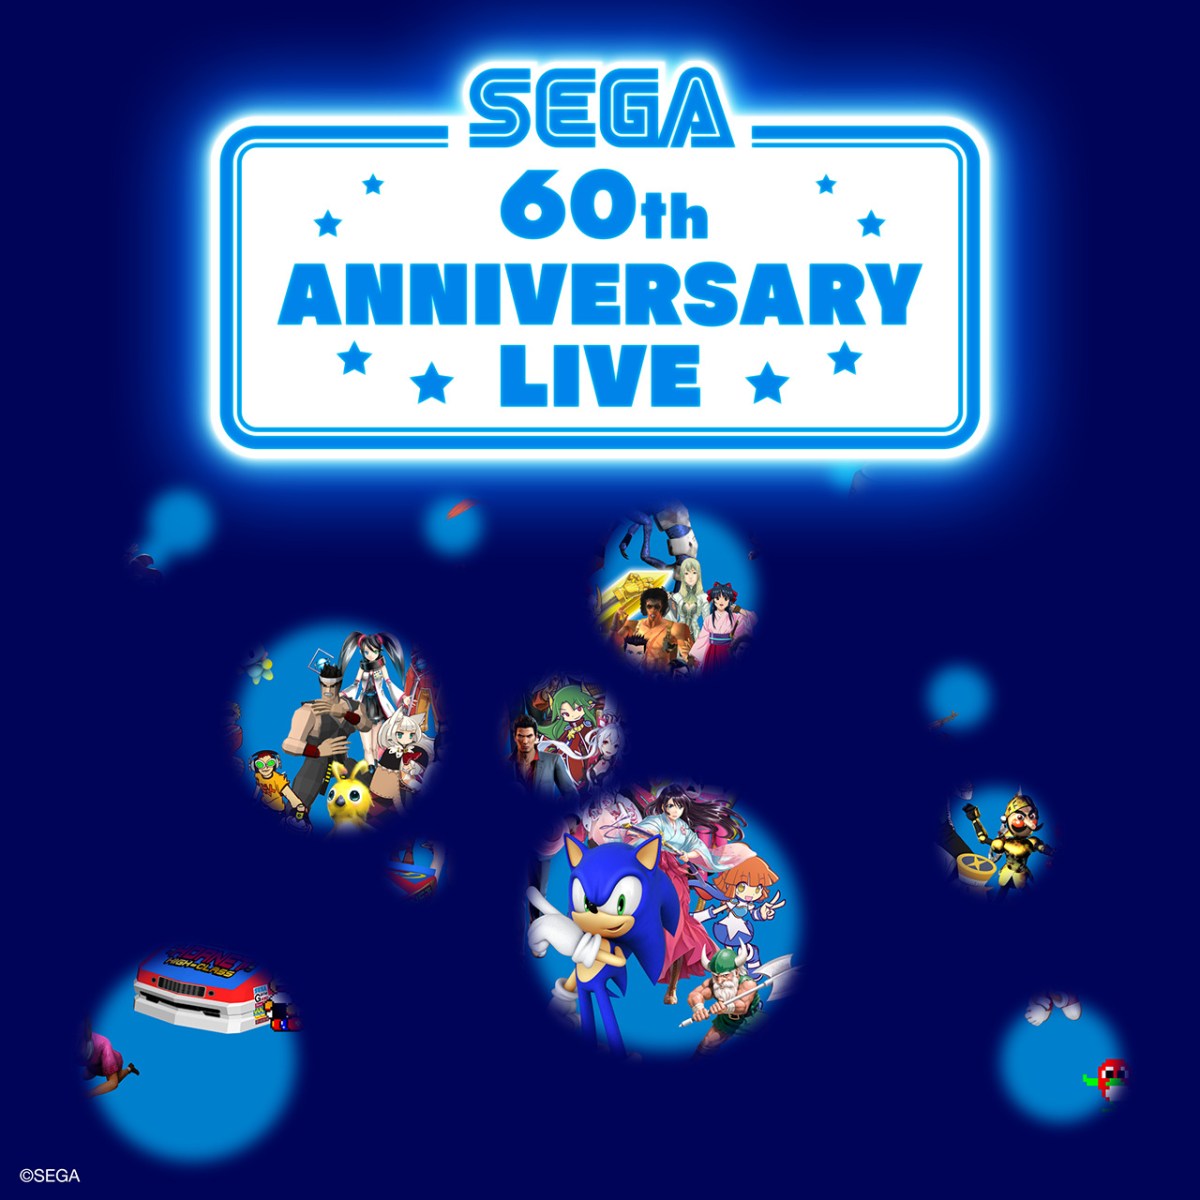 Sega 60th Anniversary Live Concert